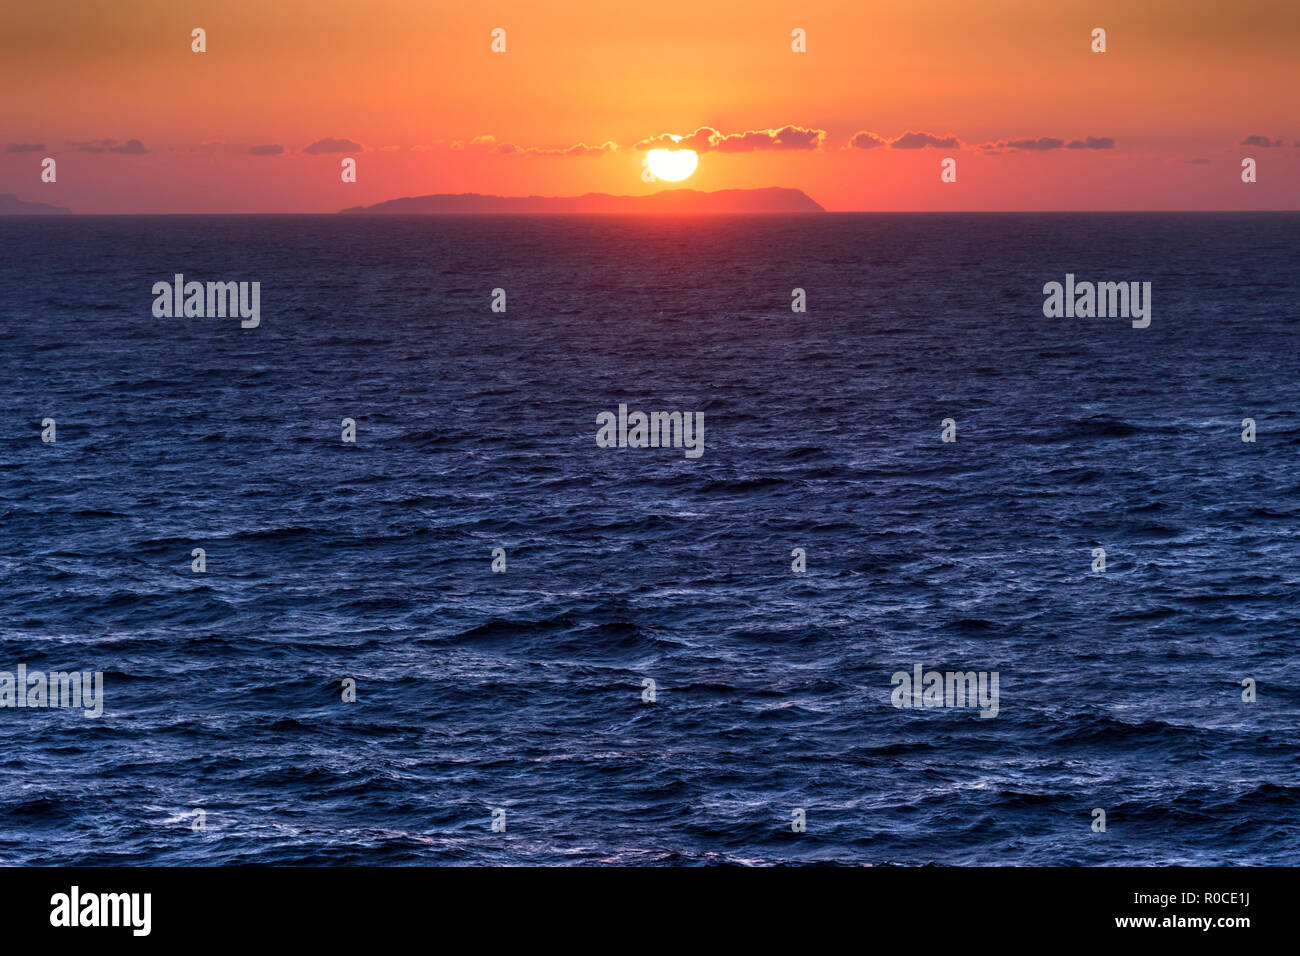 Horizont Meer bei Sonnenuntergang mit Insel isoliert. Die die schöne Erinnerung an seascape Sonnenuntergang zwischen den griechischen Inseln. Stockfoto